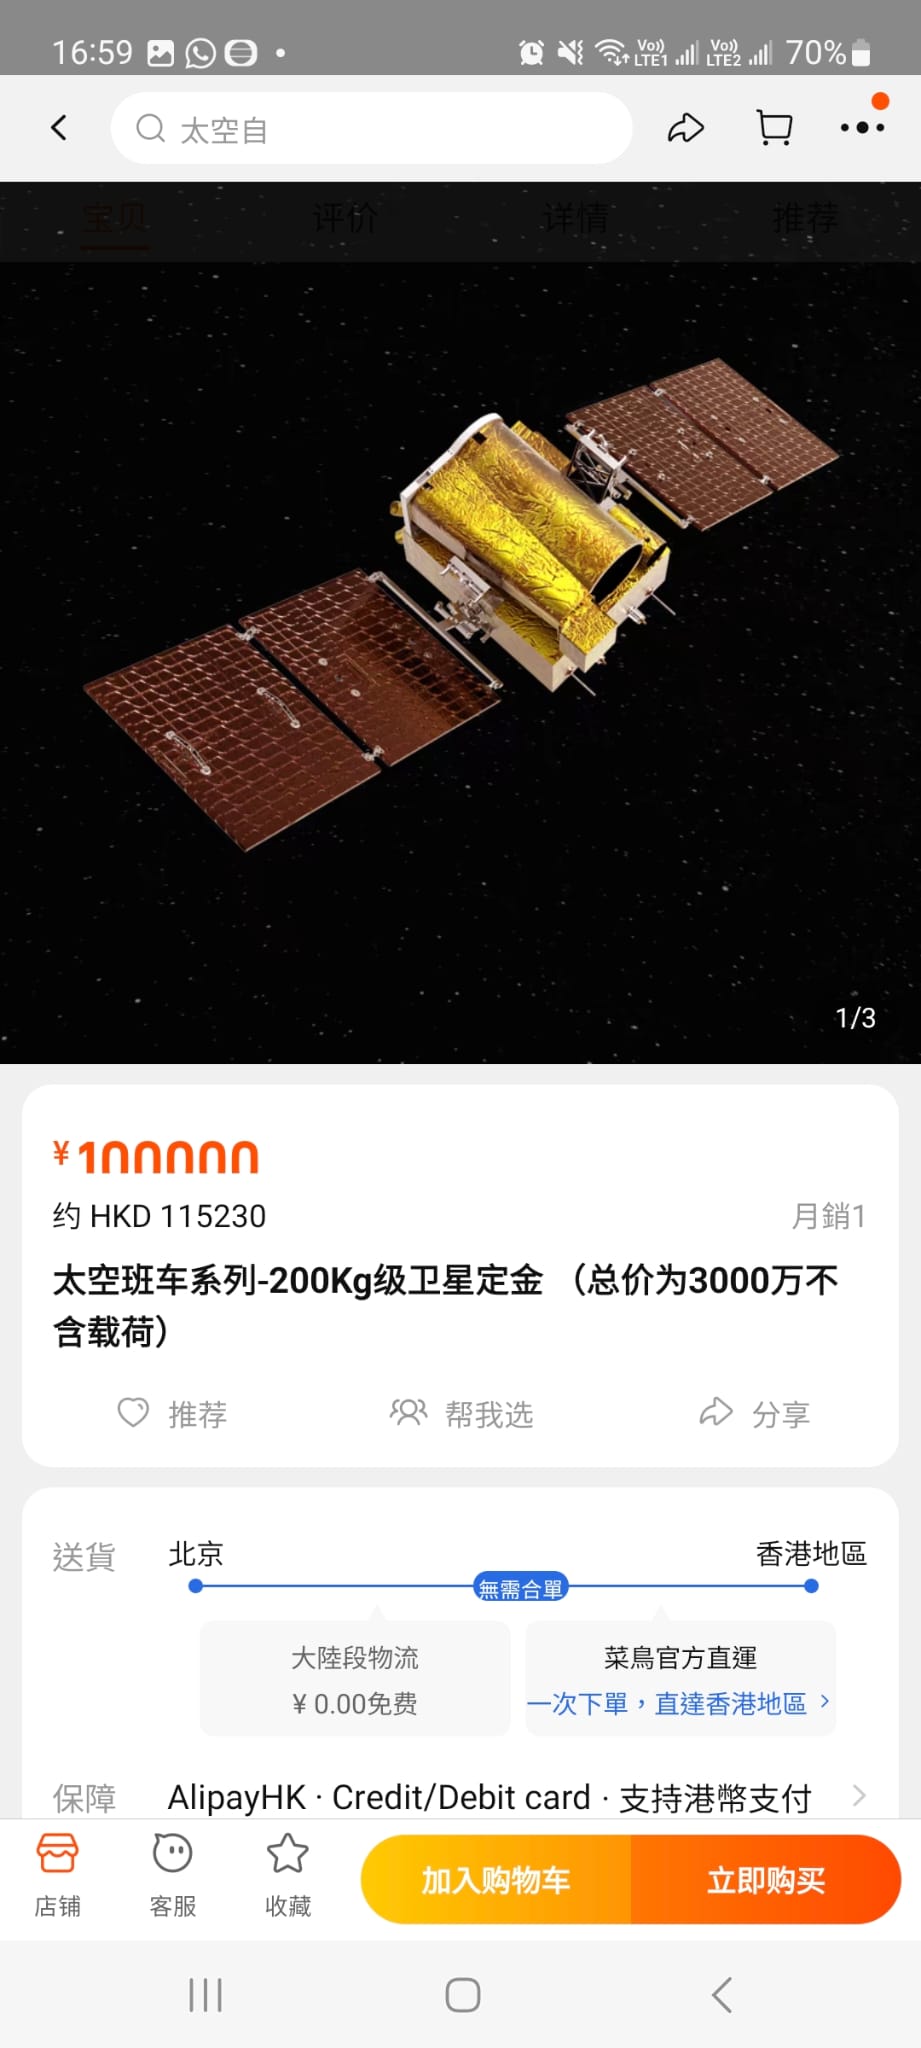 卫星定金(总价为3000万不含载荷)。